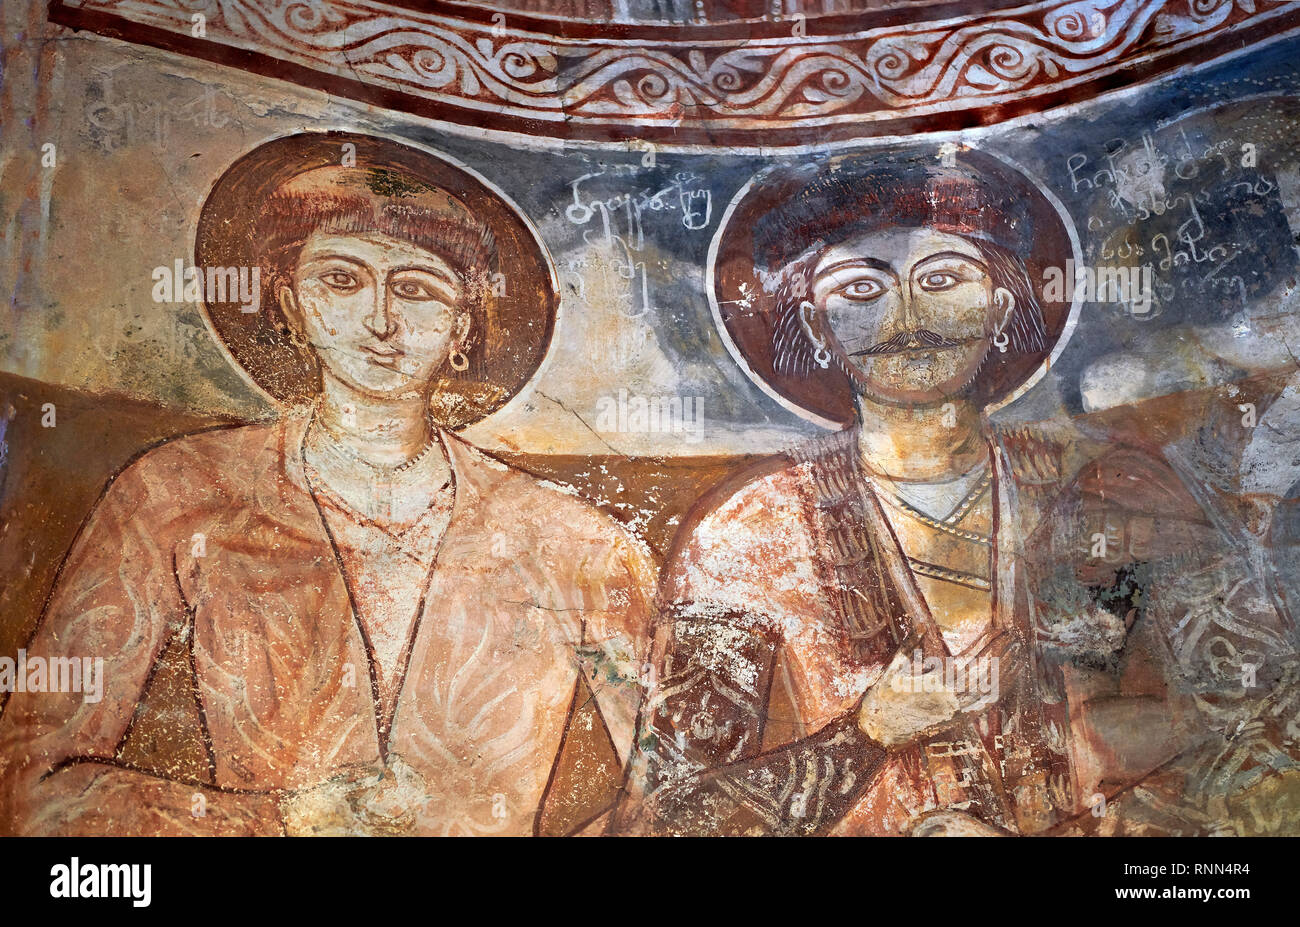 Photos et images de Nikortsminda ( Nicortsminda ) St Nicholas cathédrale orthodoxe géorgien de l'intérieur, riche de fresques du 16ème siècle, Nikortsminda, Racha r Banque D'Images